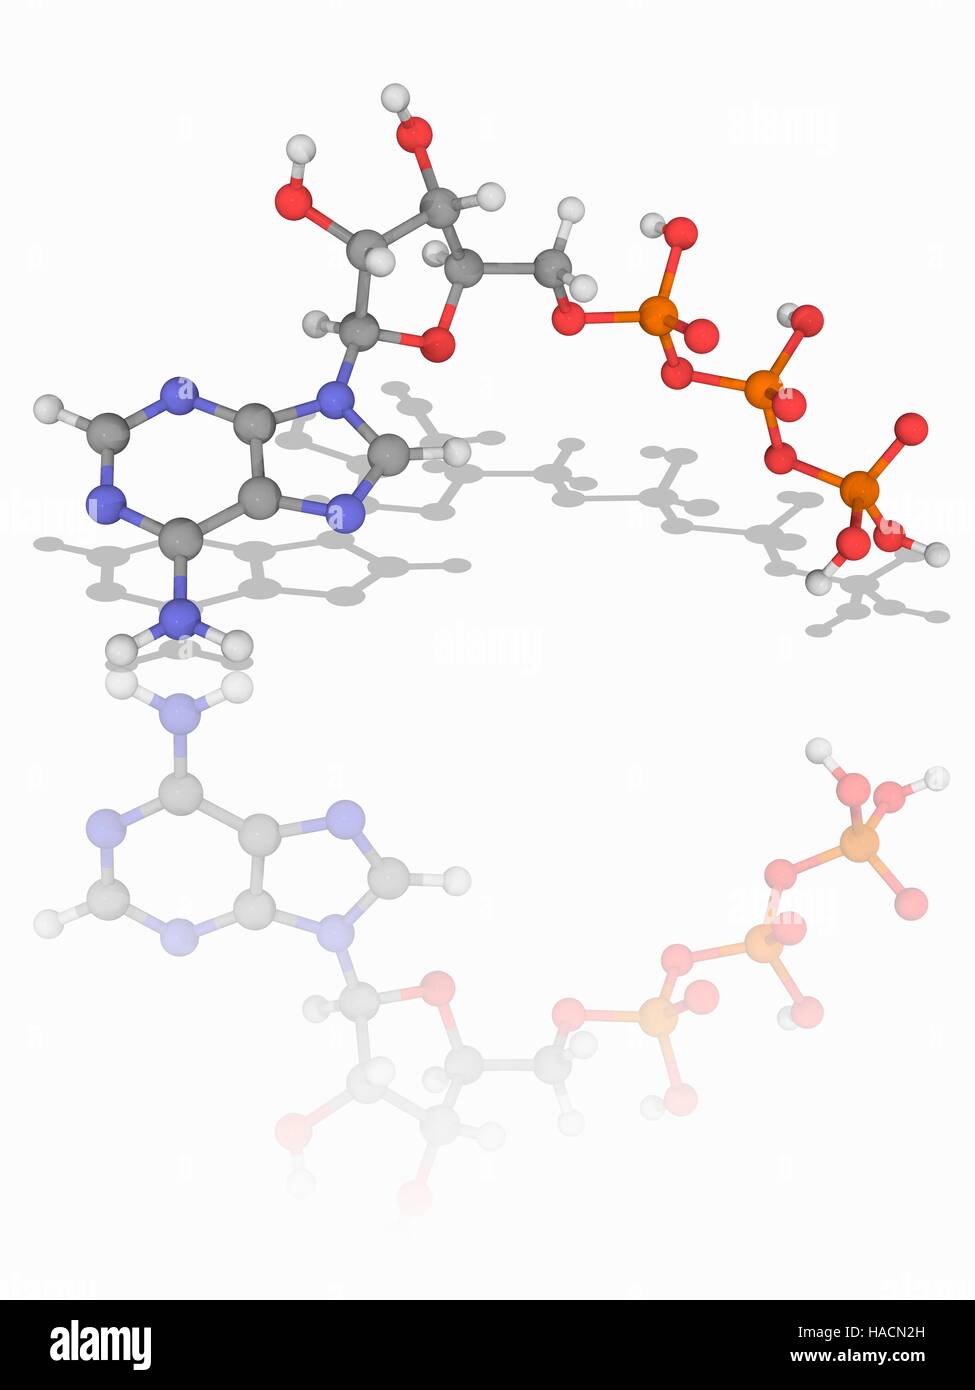 Il trifosfato di adenosina. Il modello molecolare del coenzima adenosina trifosfato (ATP, C10.H16.N5.O13.P3). Questa molecola è un vettore di energia metabolica nelle cellule. Gli atomi sono rappresentati da sfere e sono codificati a colori: carbonio (grigio), Idrogeno (bianco), Azoto (blu), Ossigeno (rosso) e il fosforo (arancione). Illustrazione. Foto Stock